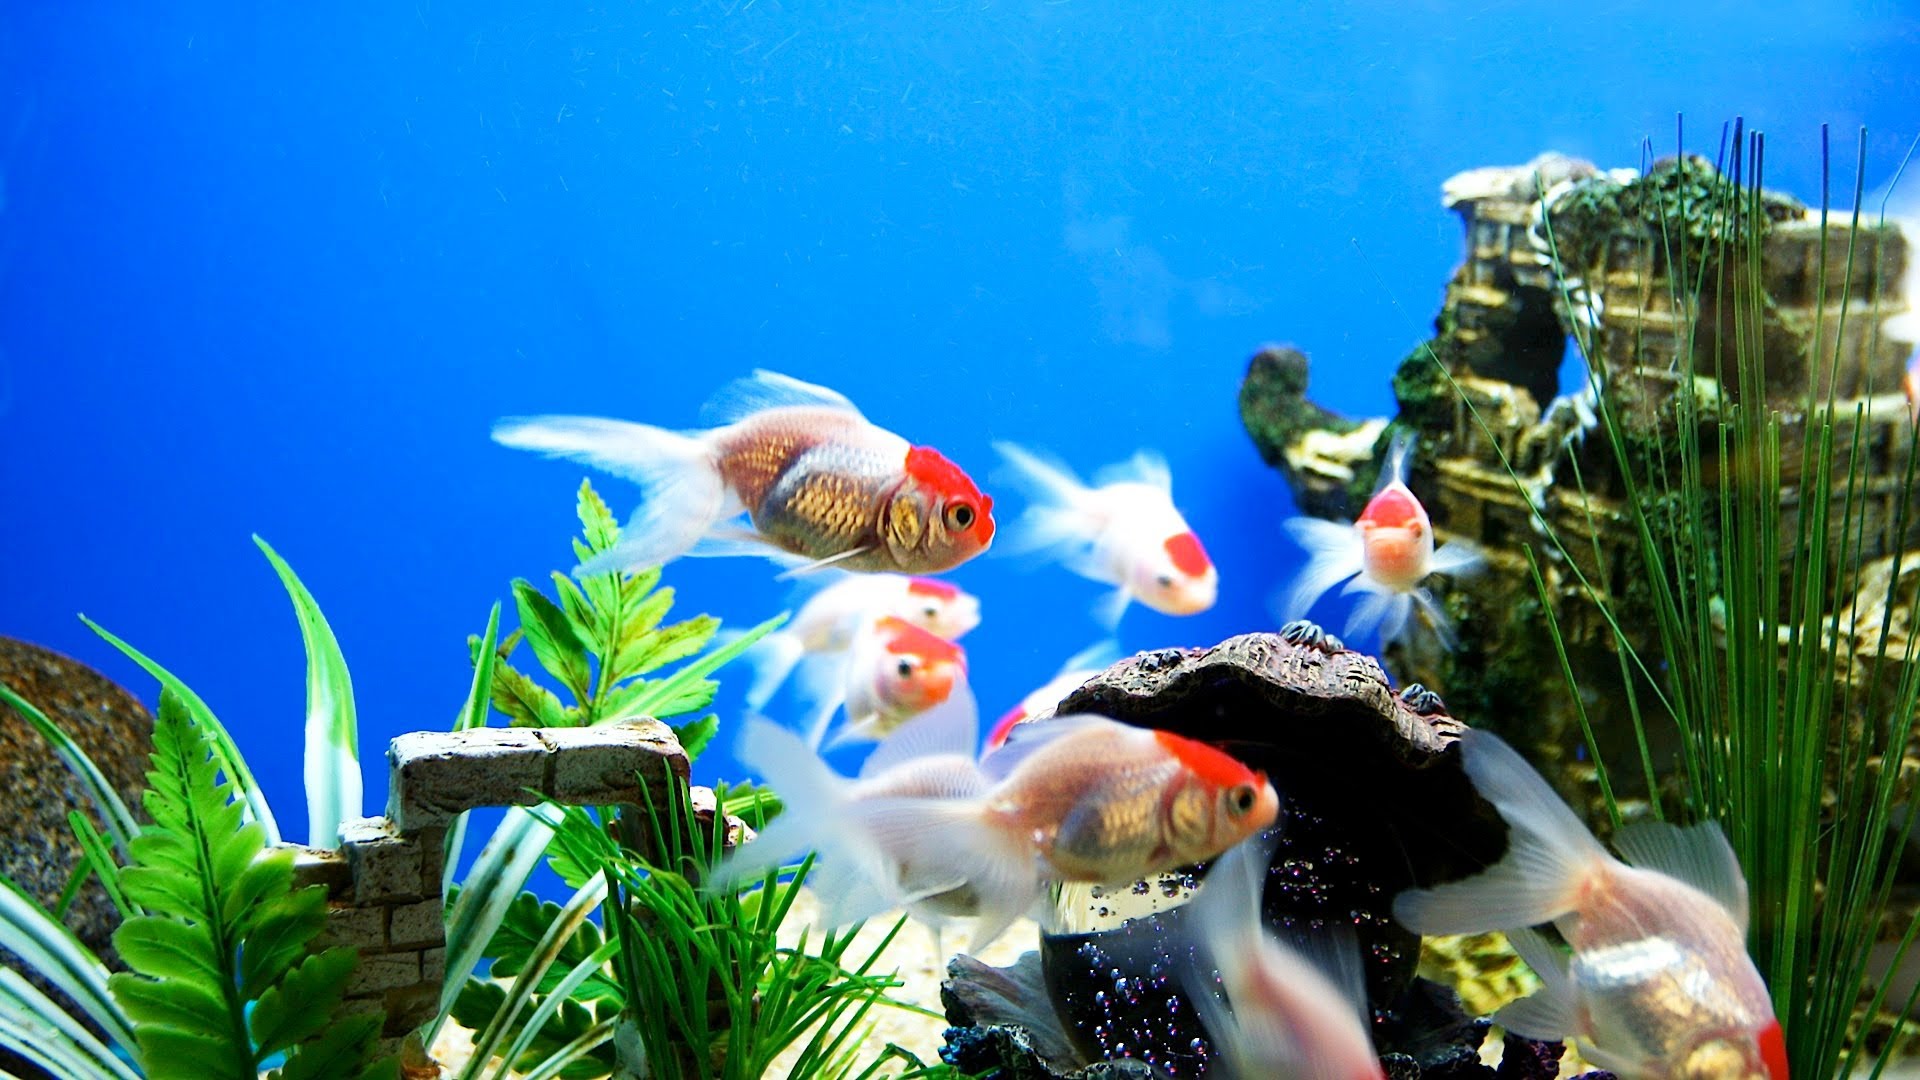 fish tank wallpaper hd,freshwater aquarium,aquarium,fish,goldfish,feeder fish